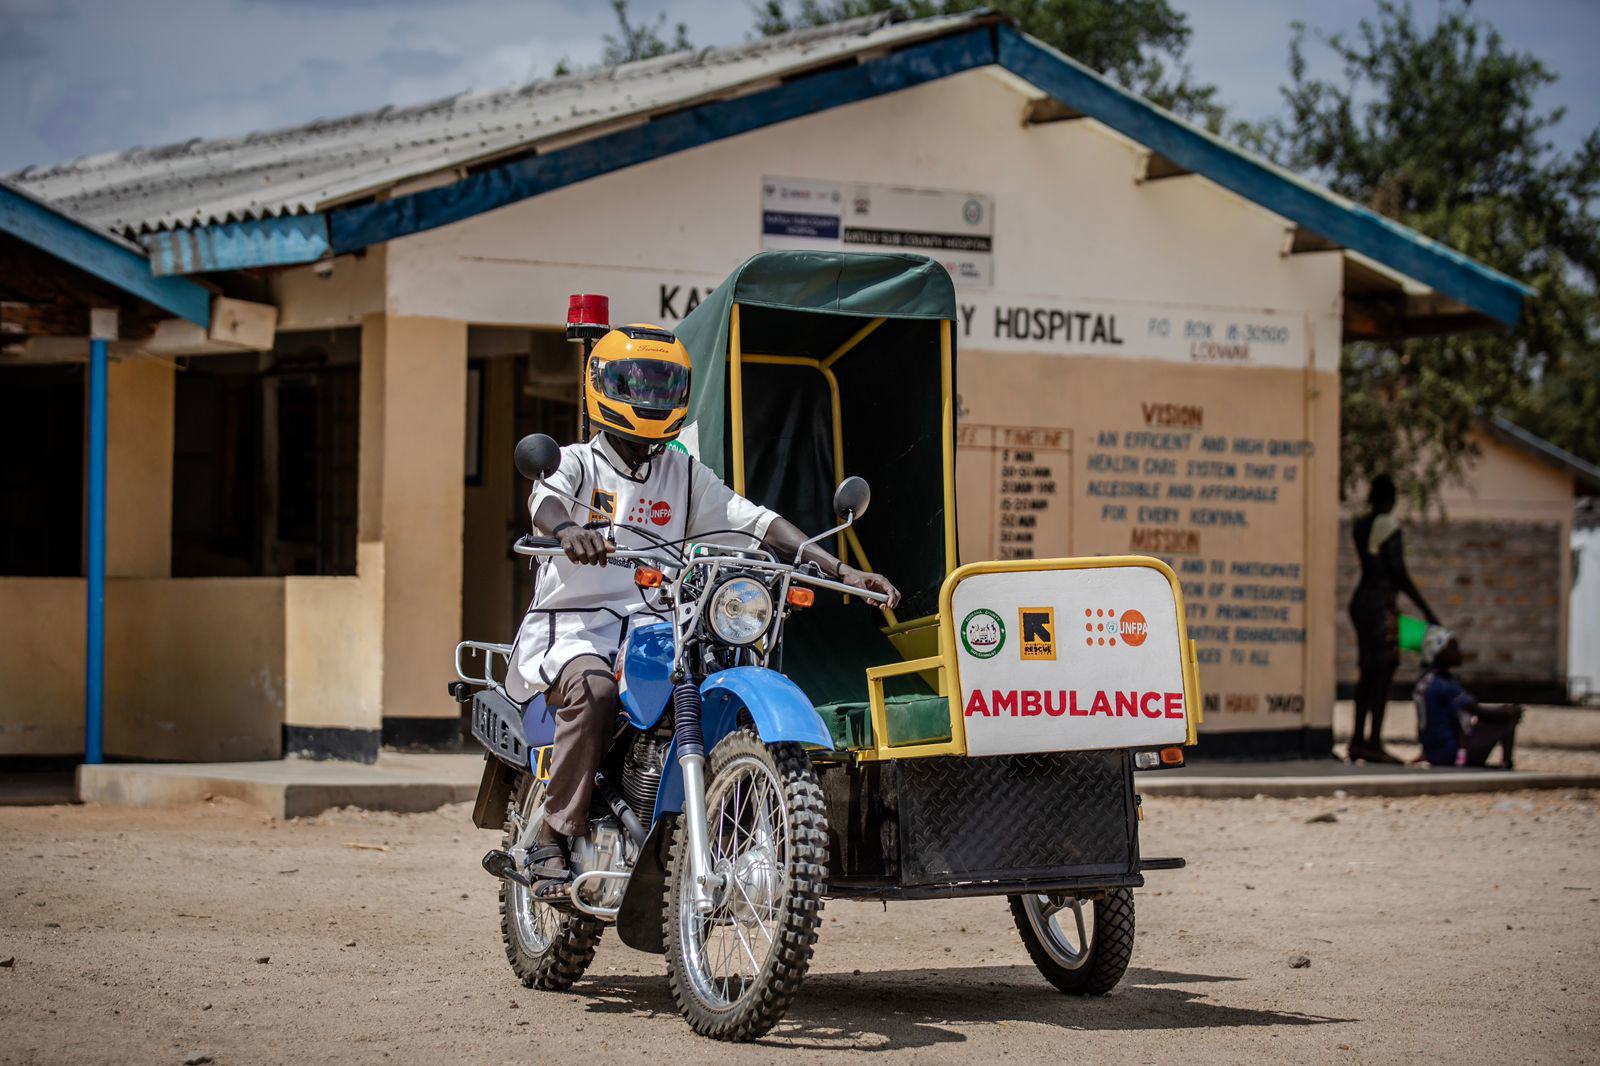 Ambulans sepeda motor menyelamatkan ibu dan bayi di Kenya: UNFPA